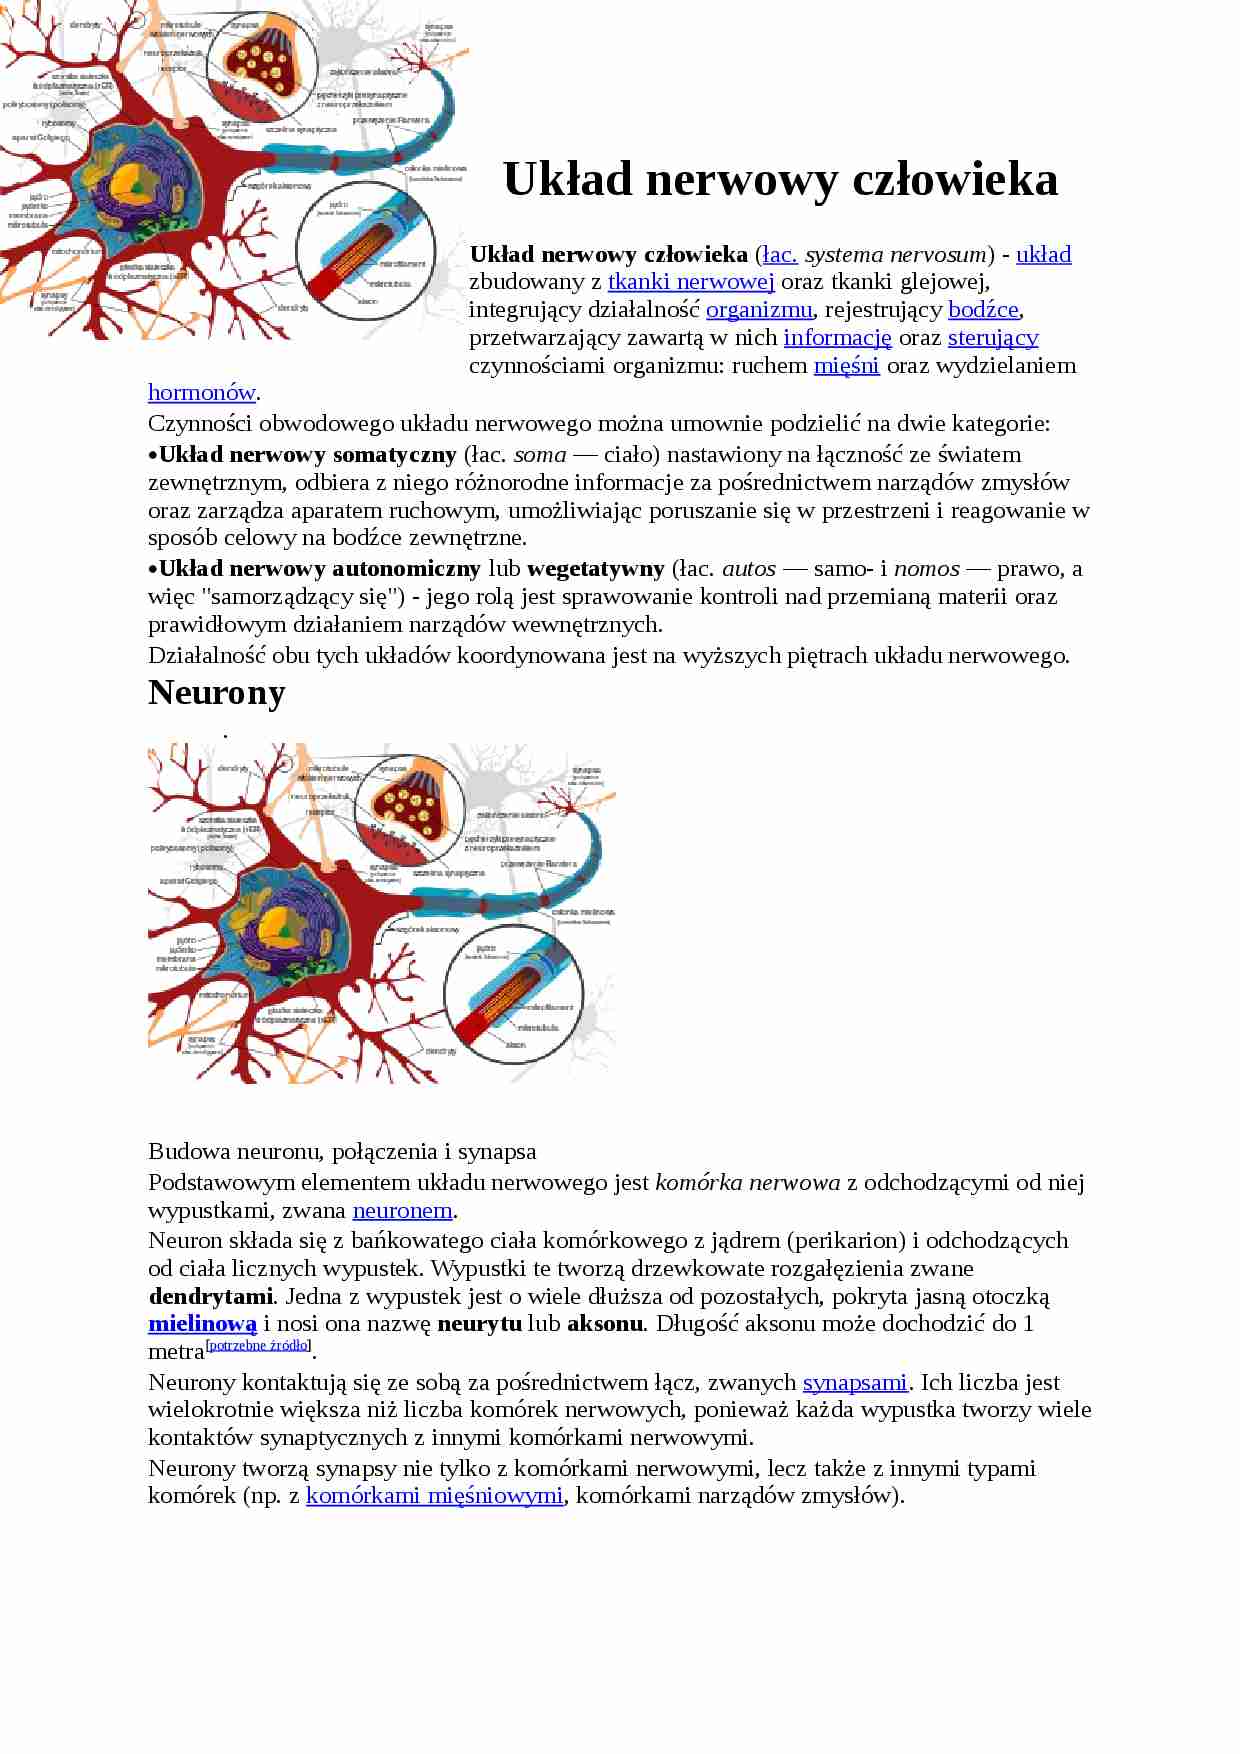 Układ nerwowy człowieka - strona 1